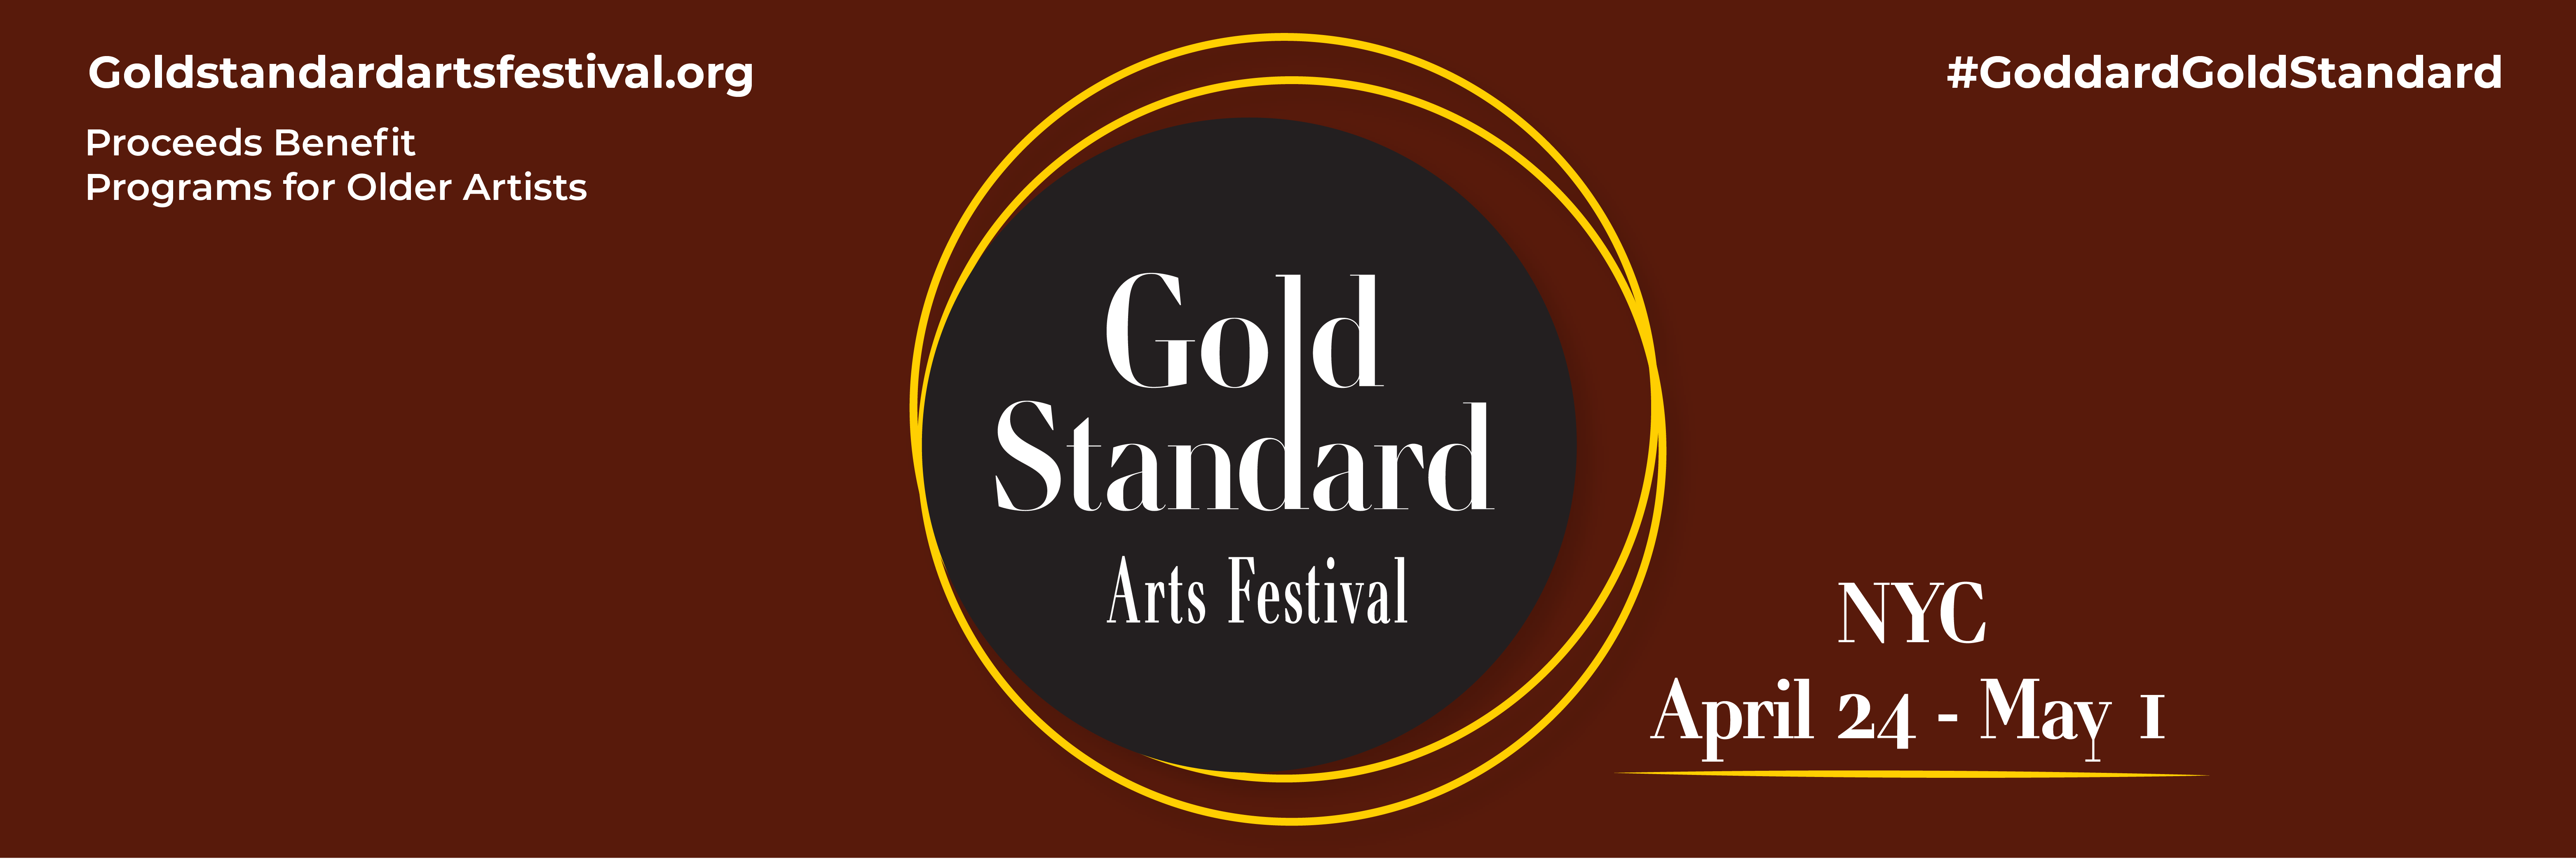 Gold Standard Arts Festival April 25-May 1 #GoldStandardFestival goldstandardartsfestival.org Proceeds benefit programs for older artists